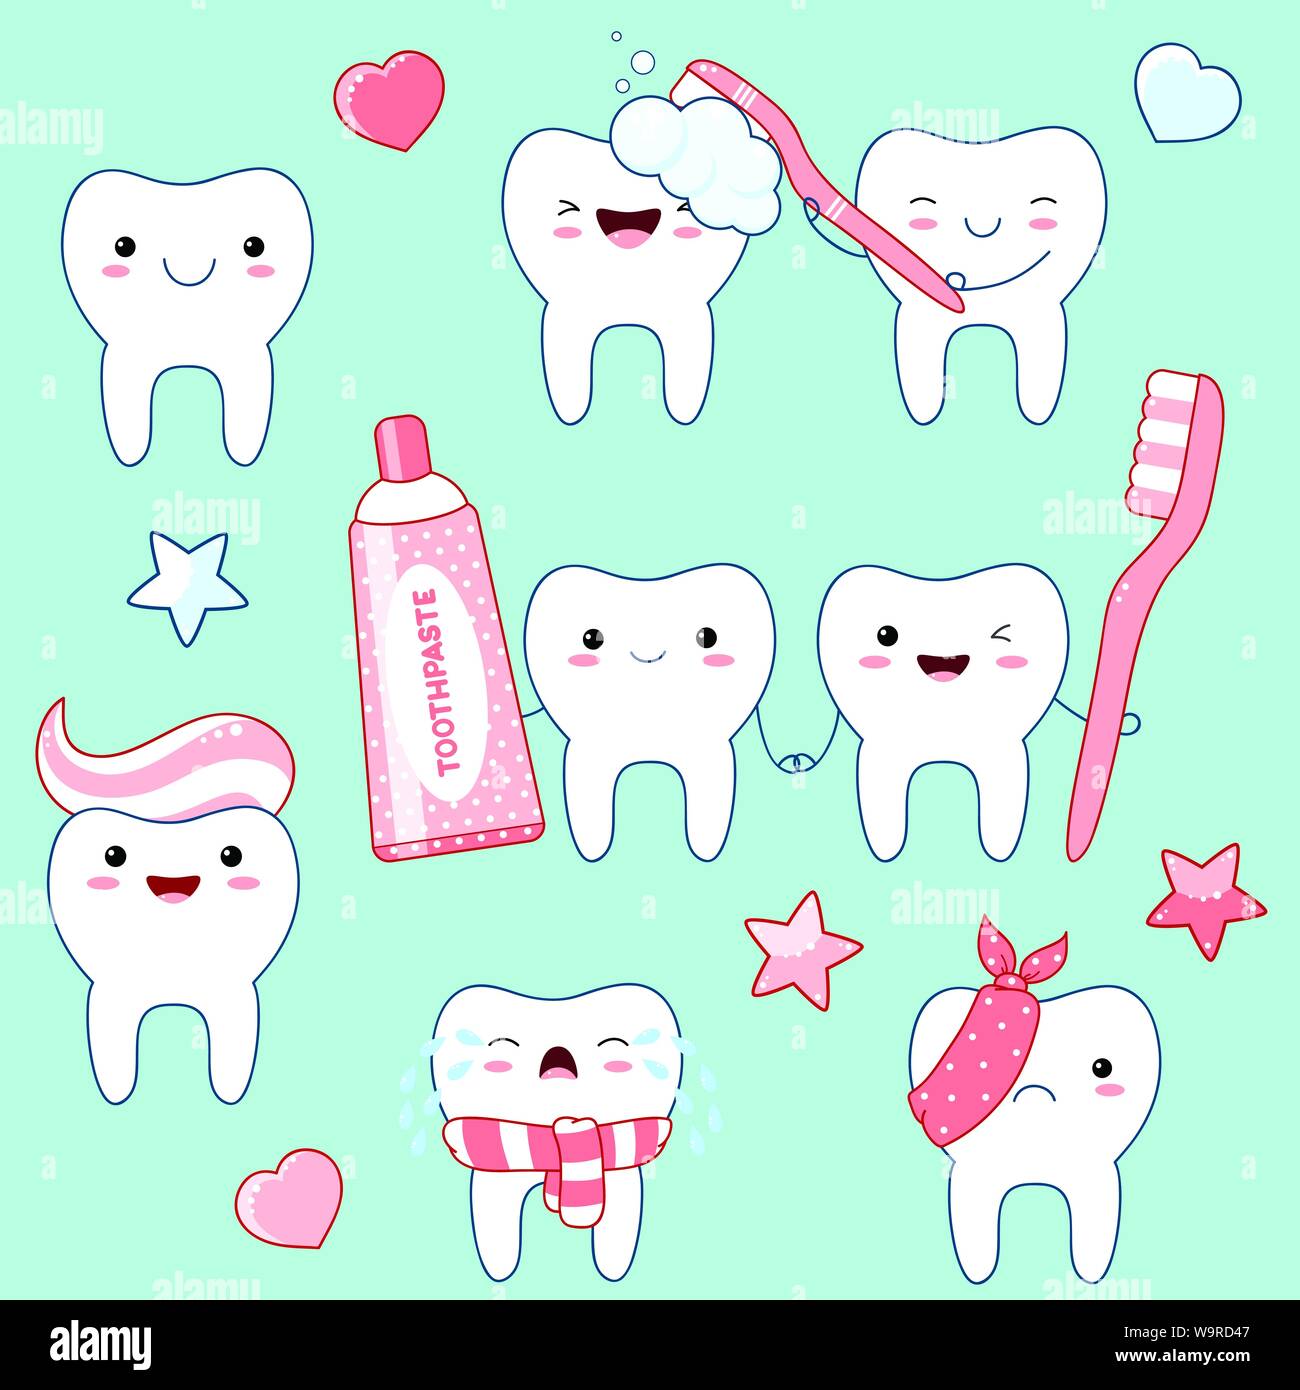 Funny cute ensemble d'icônes dans les dents style kawaii avec sourire et joues roses. Collection d'illustrations sur le thème de l'hygiène buccale. Spe8 Illustration de Vecteur